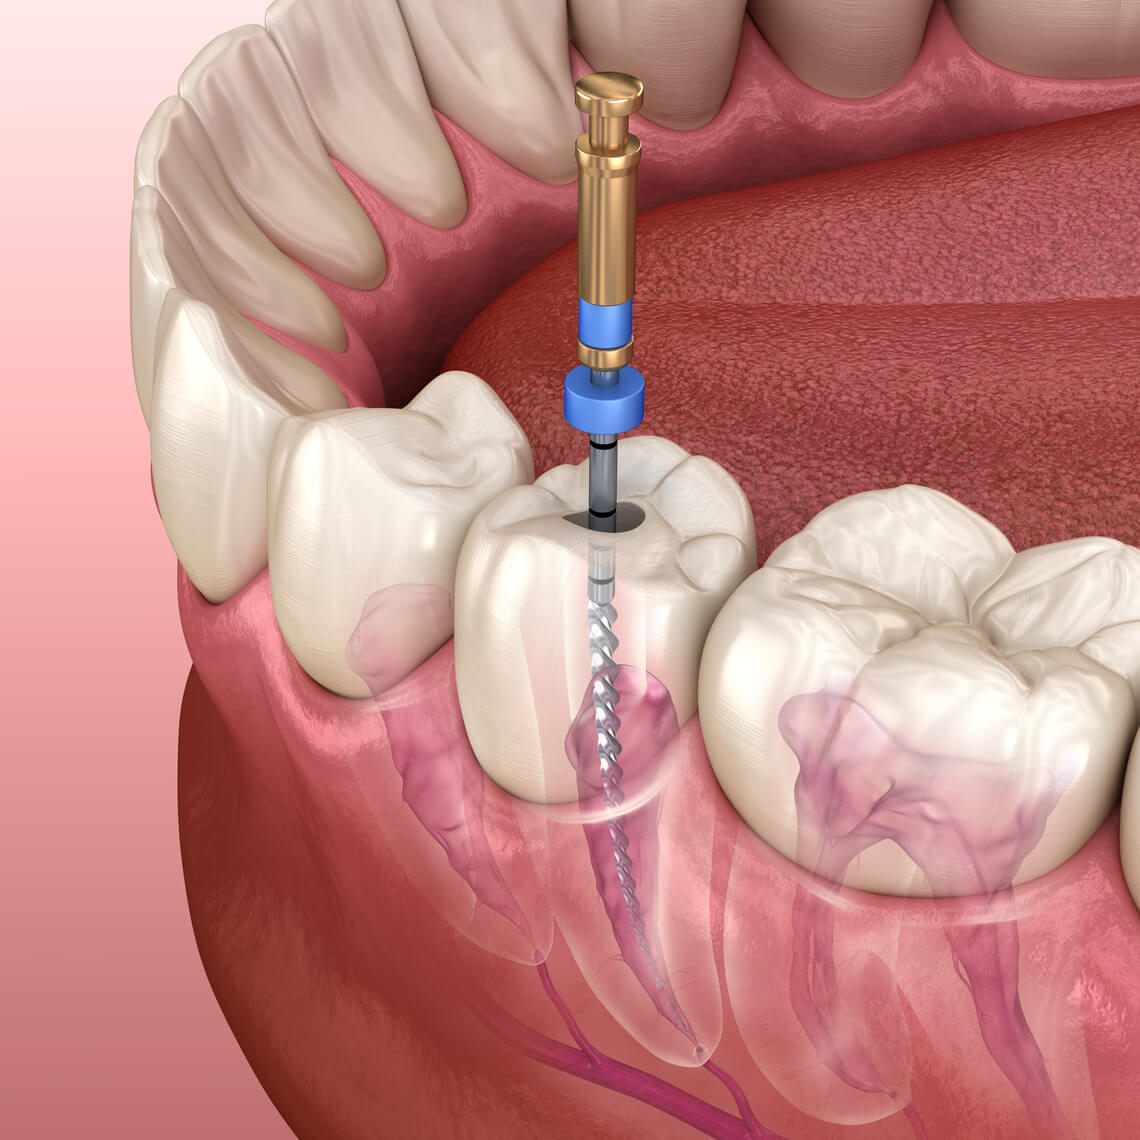 Endodoncia todo lo que necesitas saber